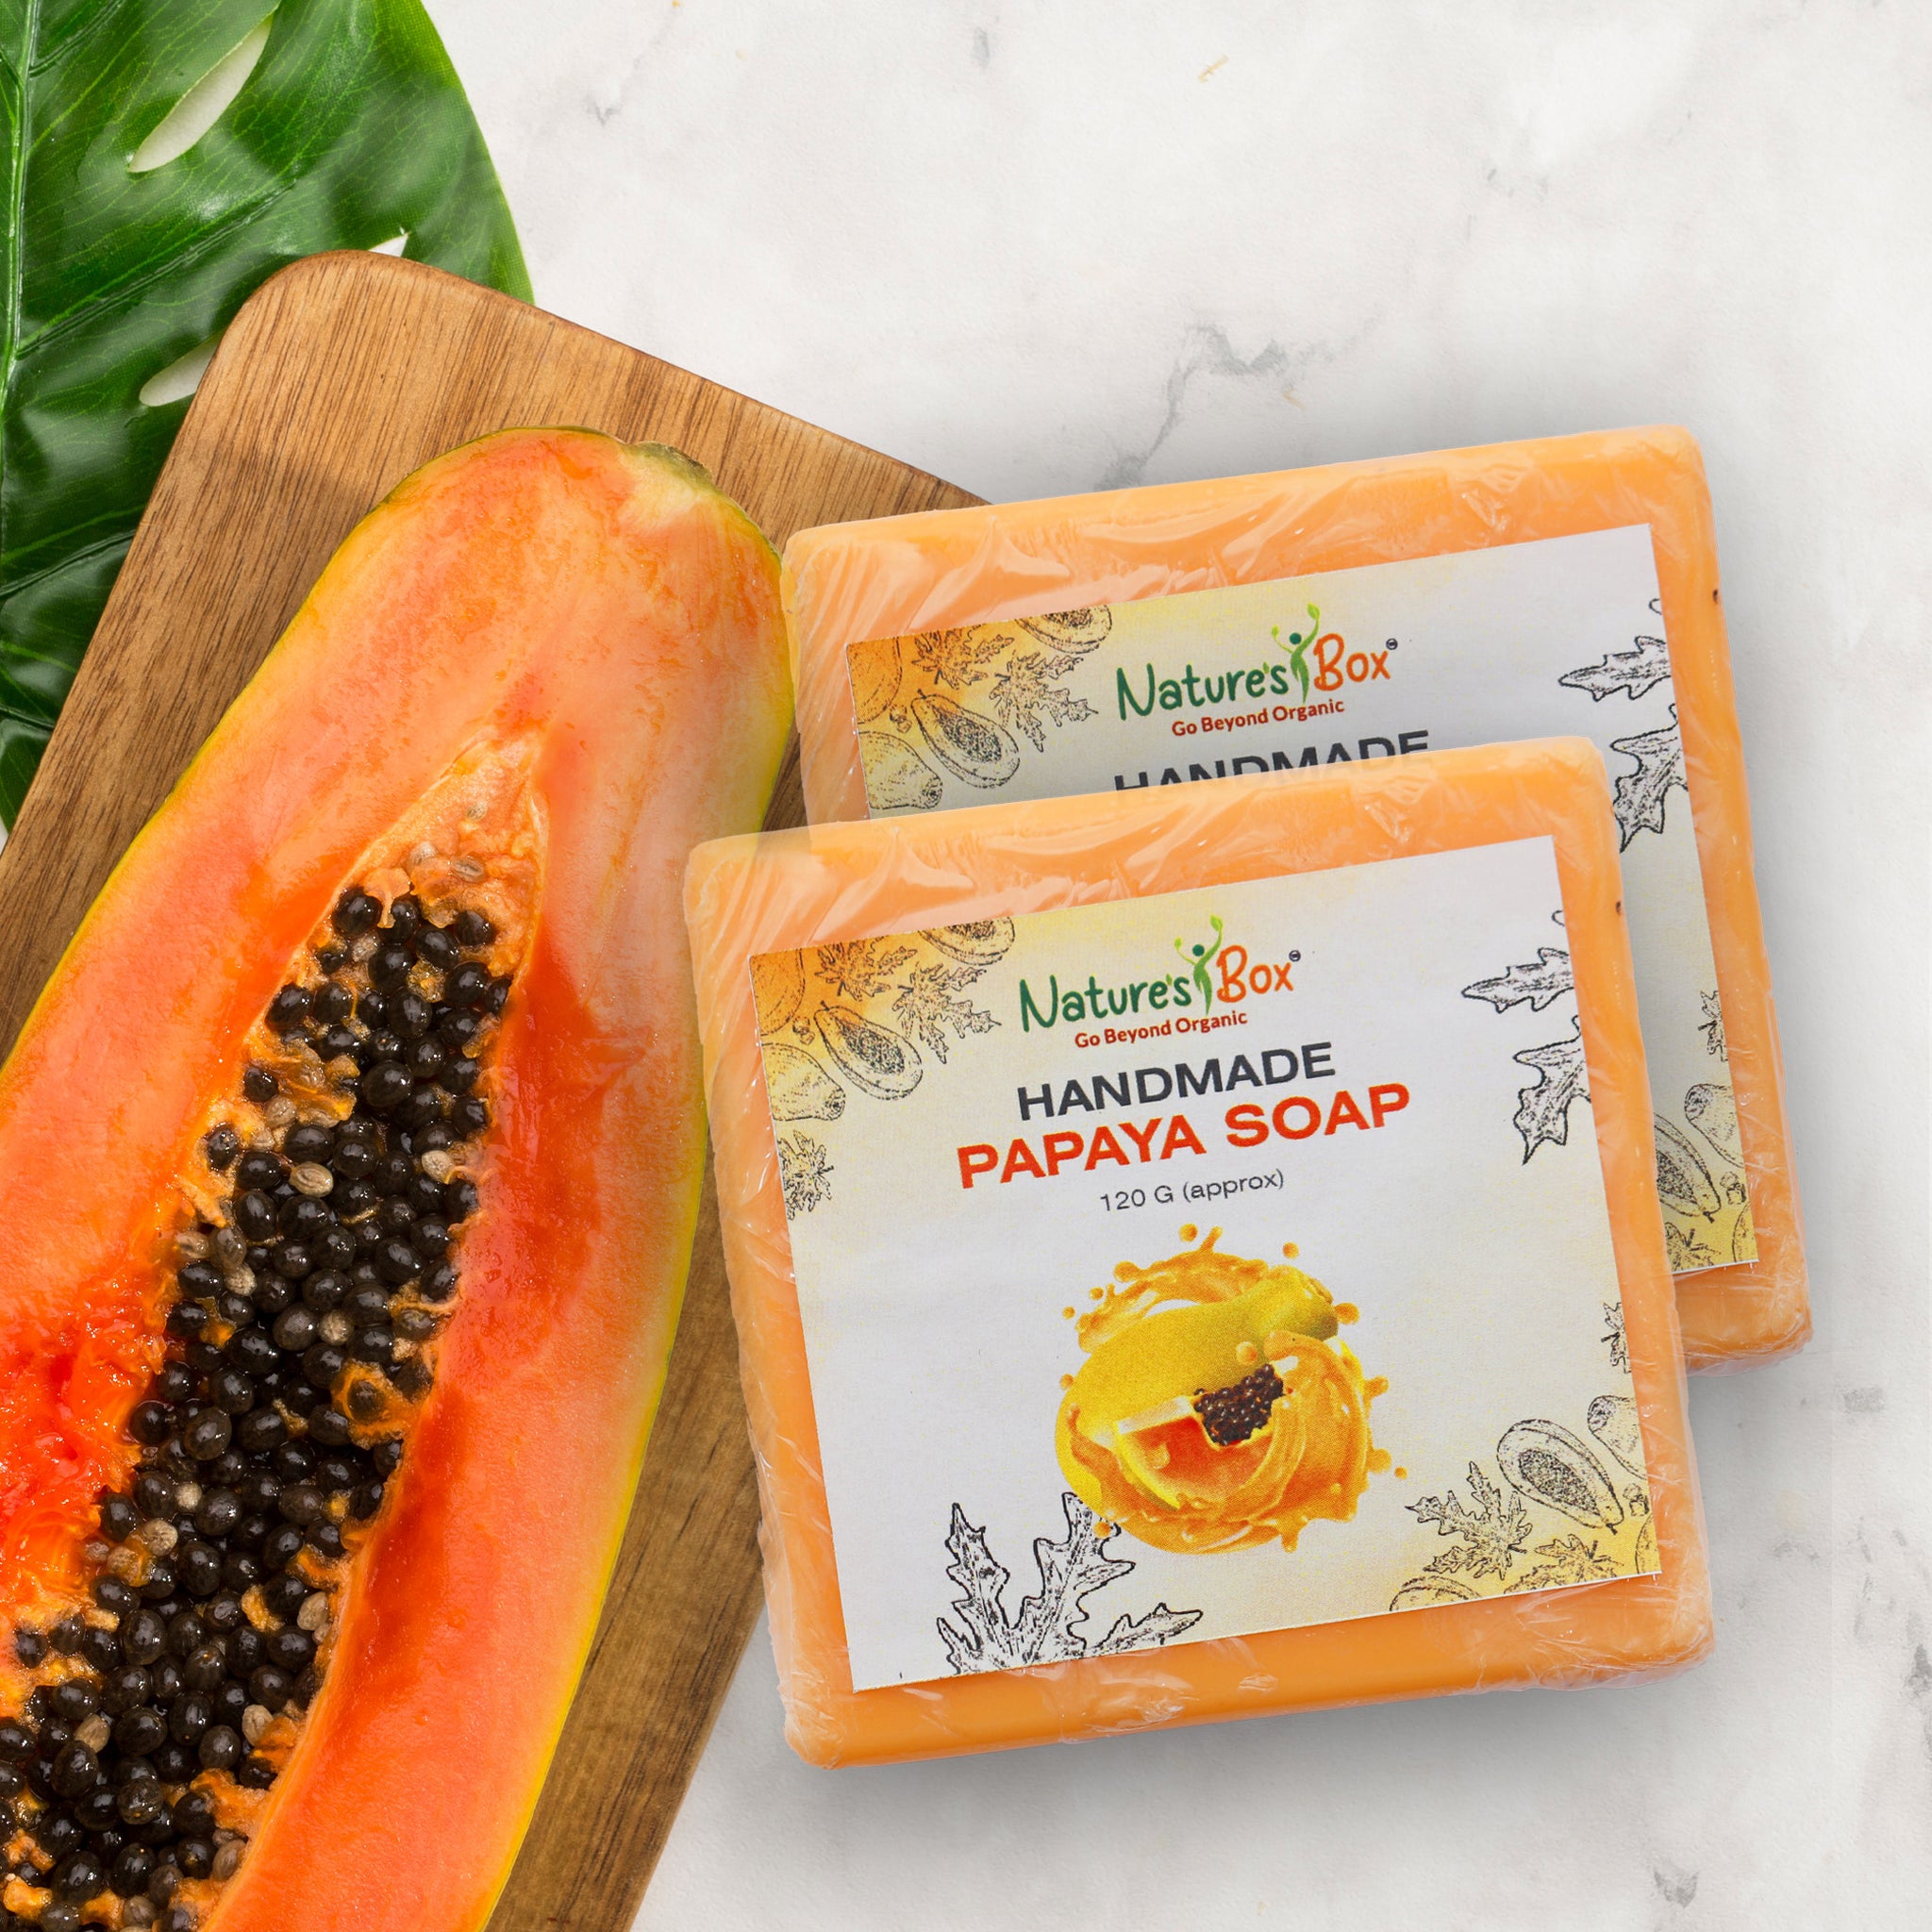 Handmade Papaya Soap 120gms